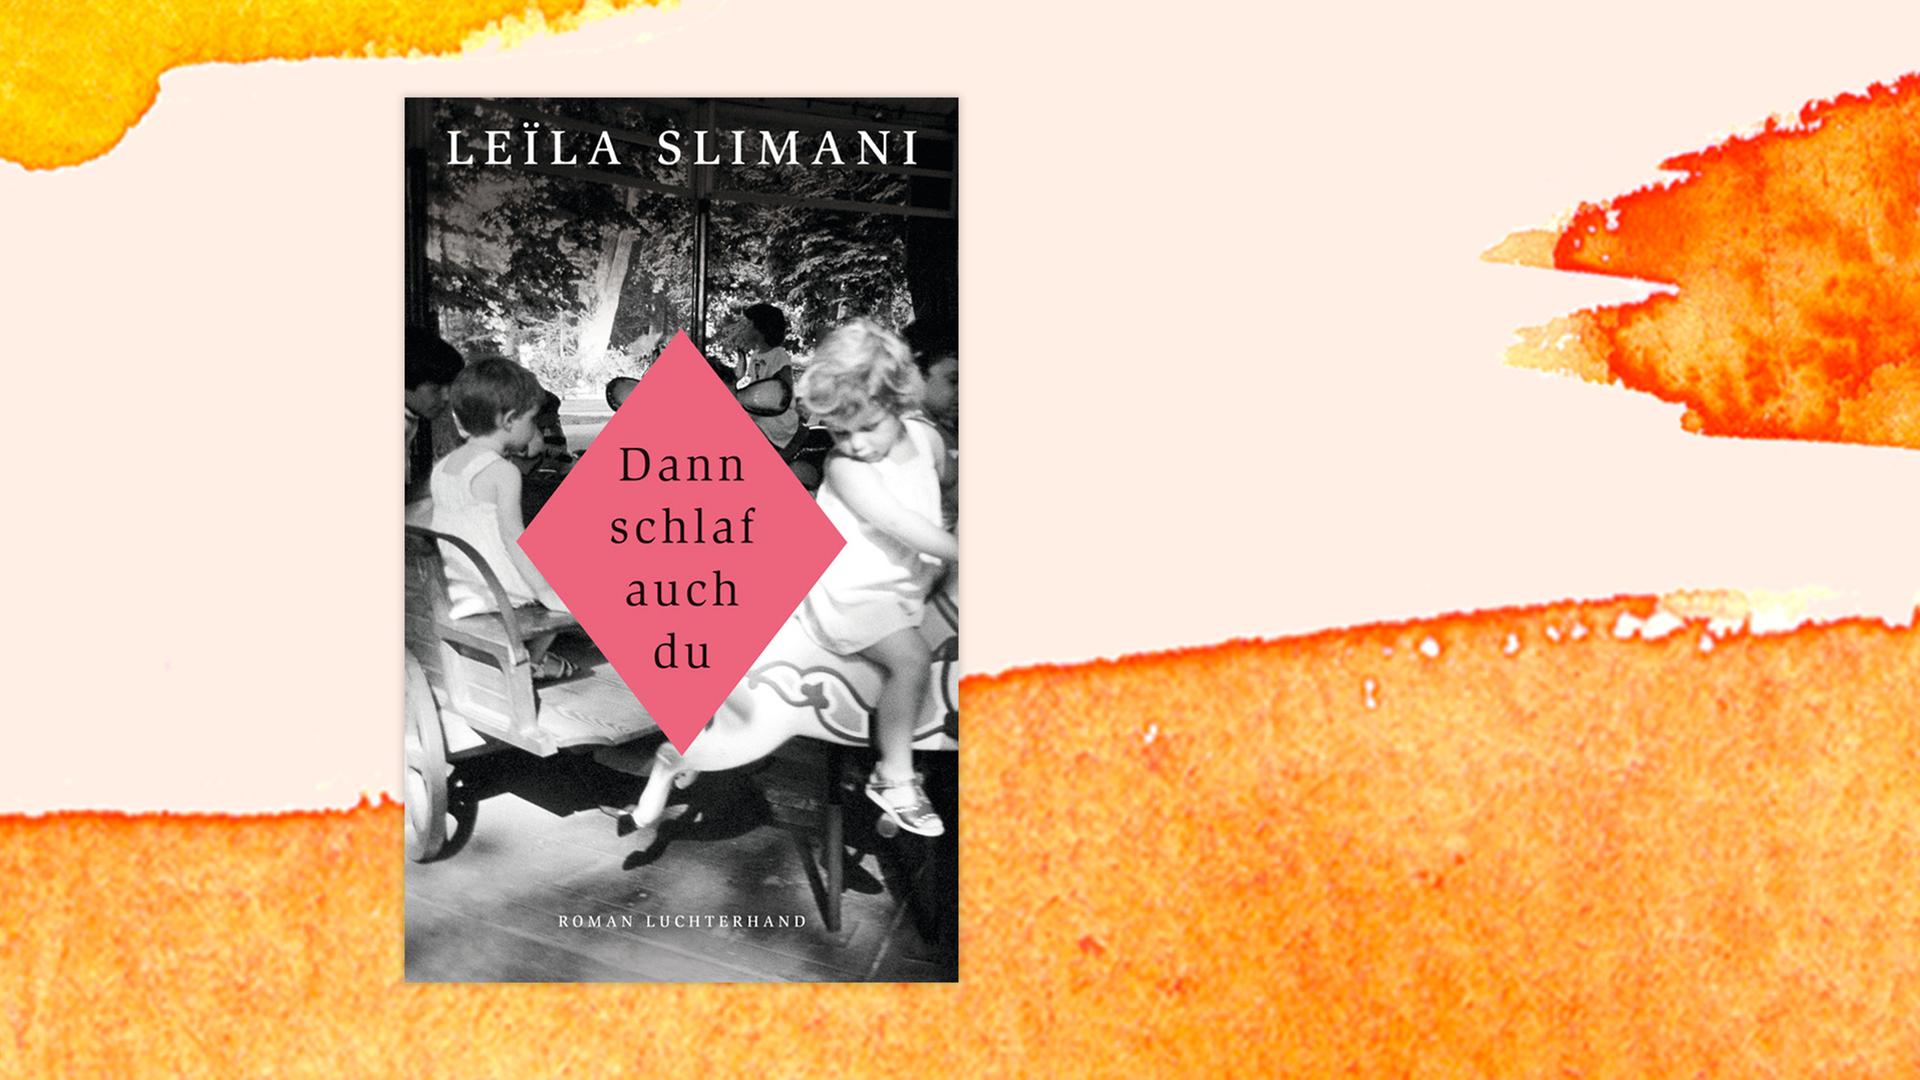 Buchcover zu Leila Slimani: "Dann schlaf auch du"